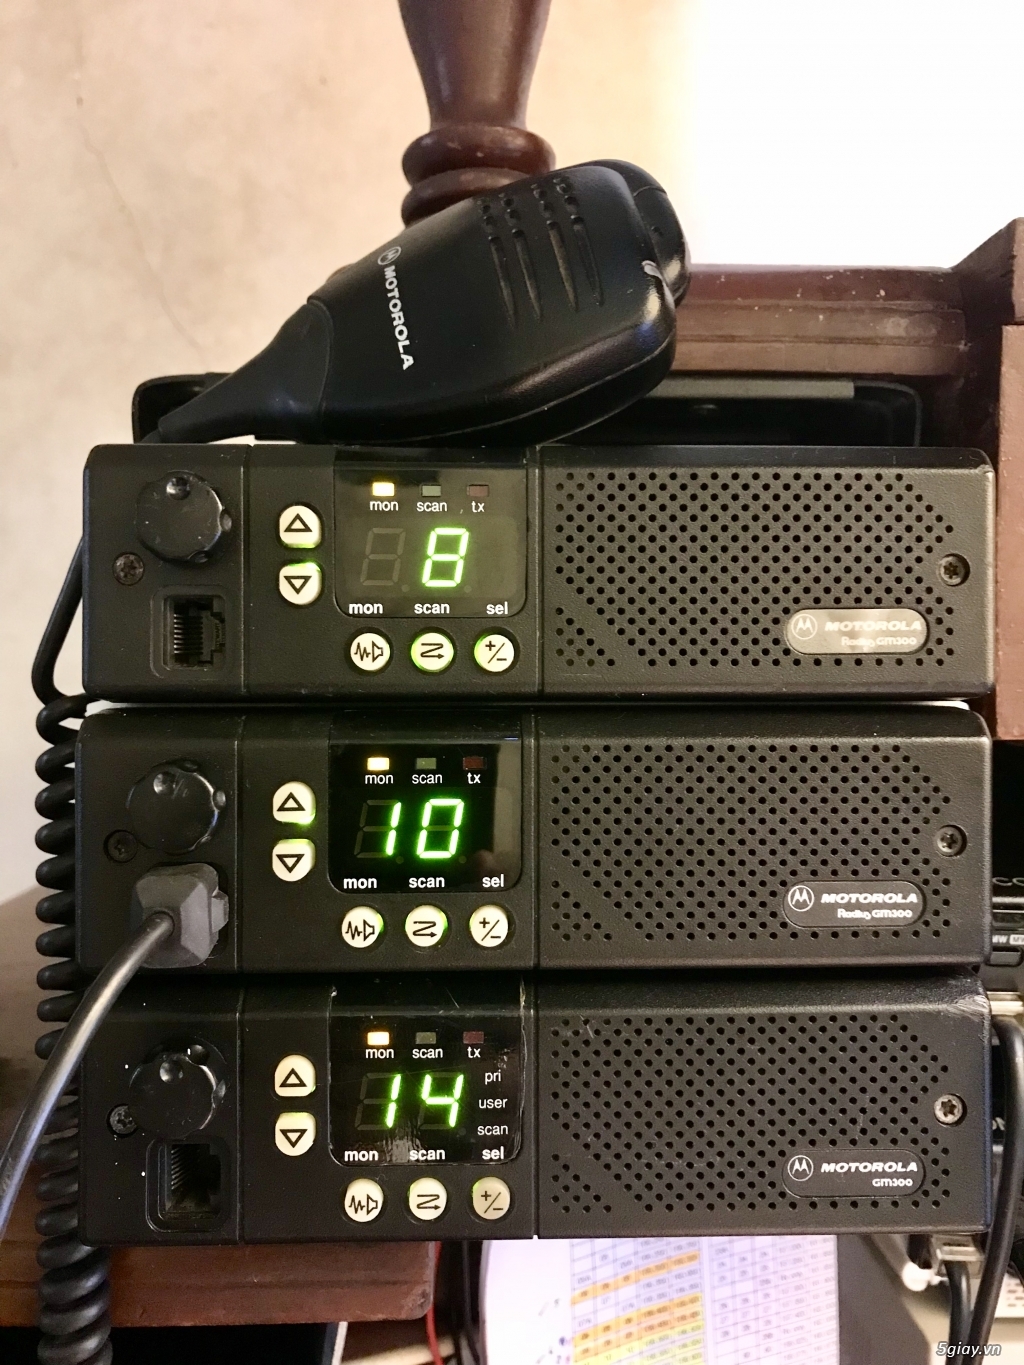 Cần bán: bộ đàm trạm motorola GM300 VHF - free lập trình tần số